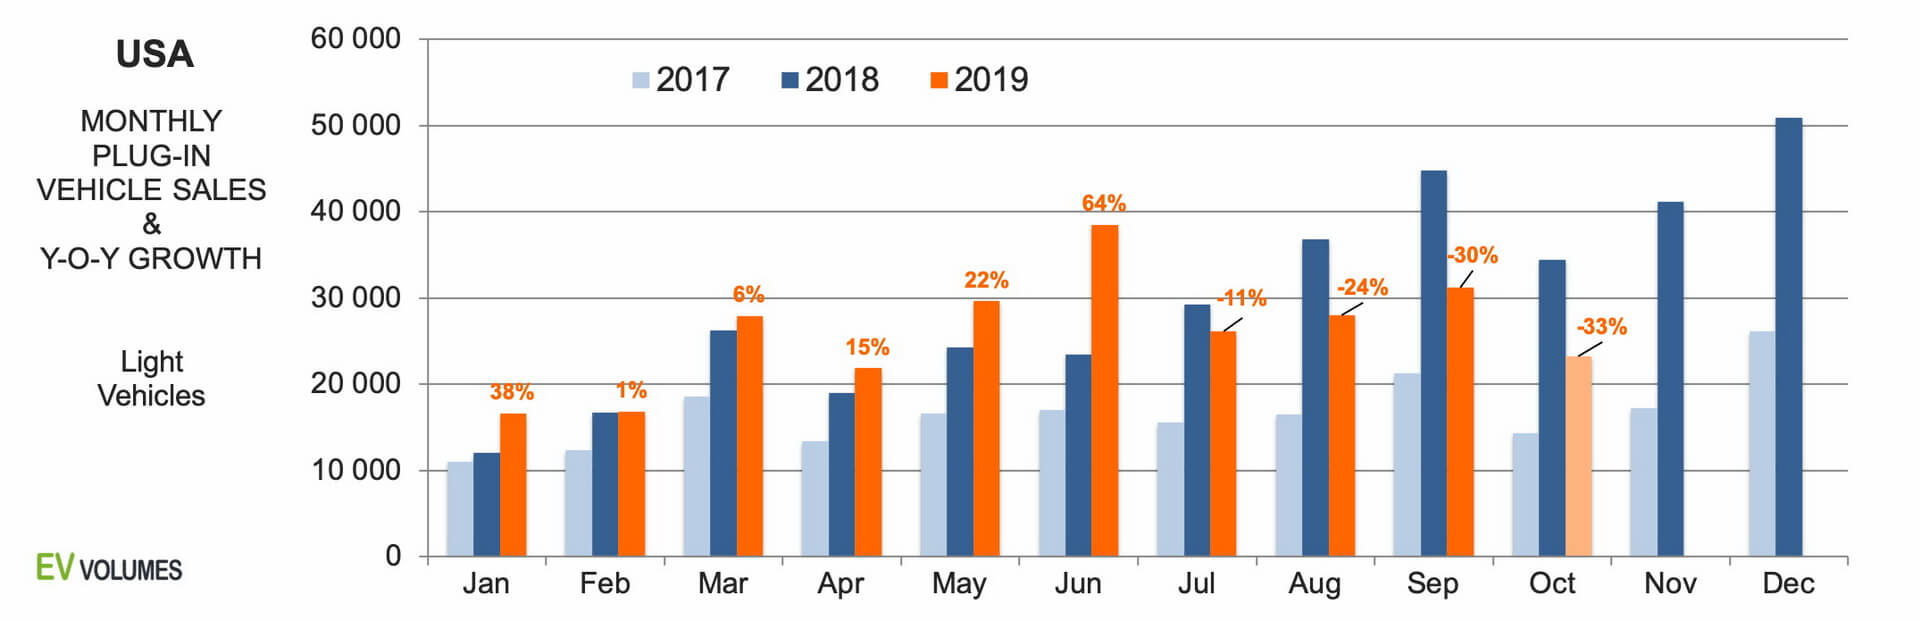 Продажи электромобилей и плагин-гибридов в США с 2017 по 2019 (H3)